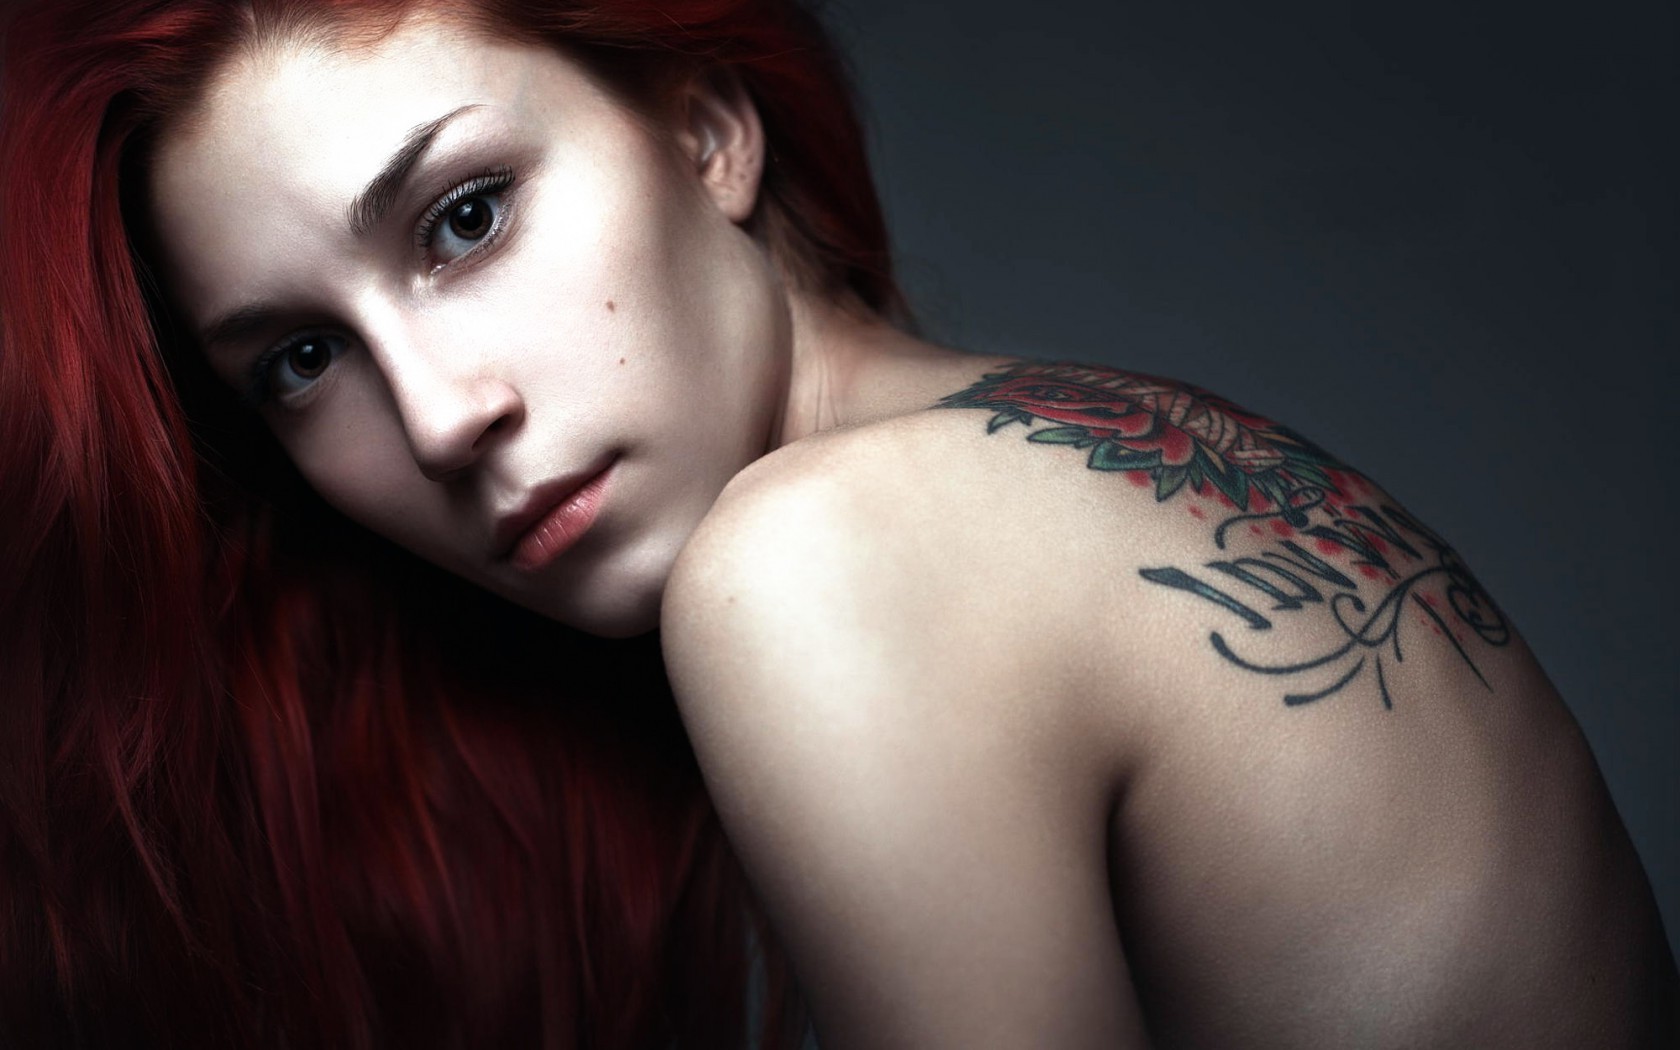 Redhead Women Tattoos Model Bare Shoulders Wallpapers Hd Desktop